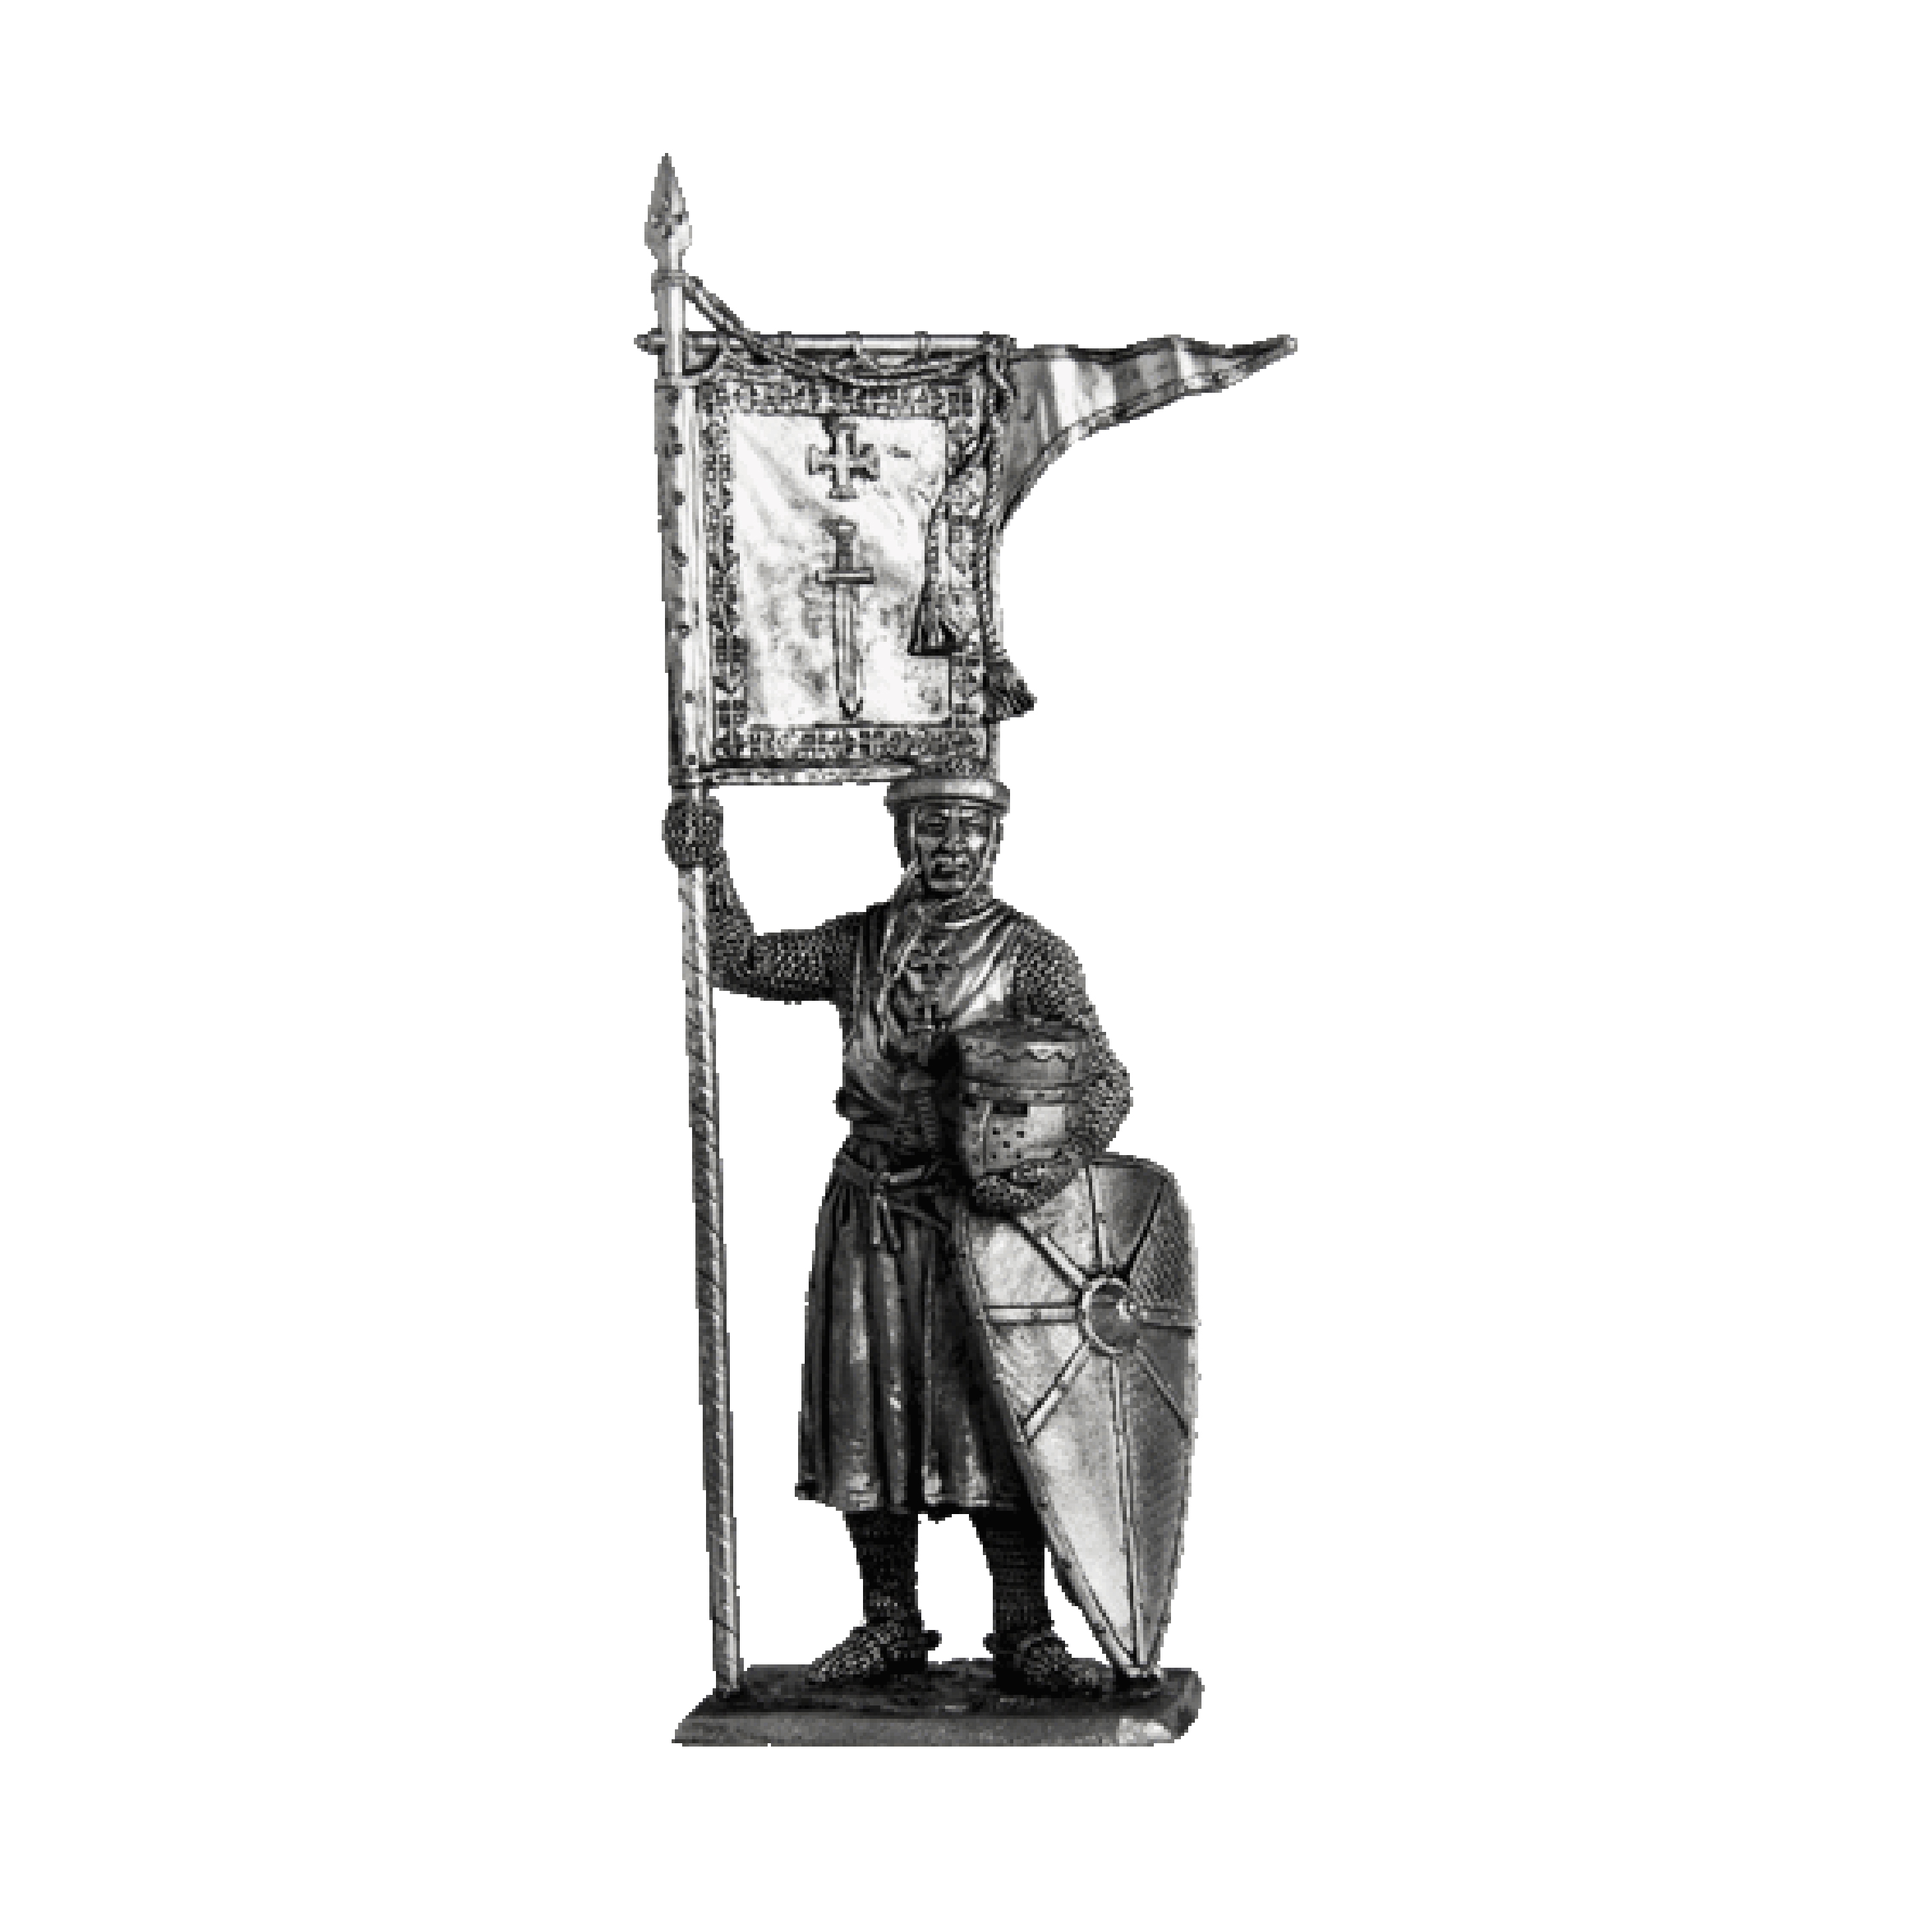 Kılıç Düzeni Tarikatı Şövalyesi, 1202-1237